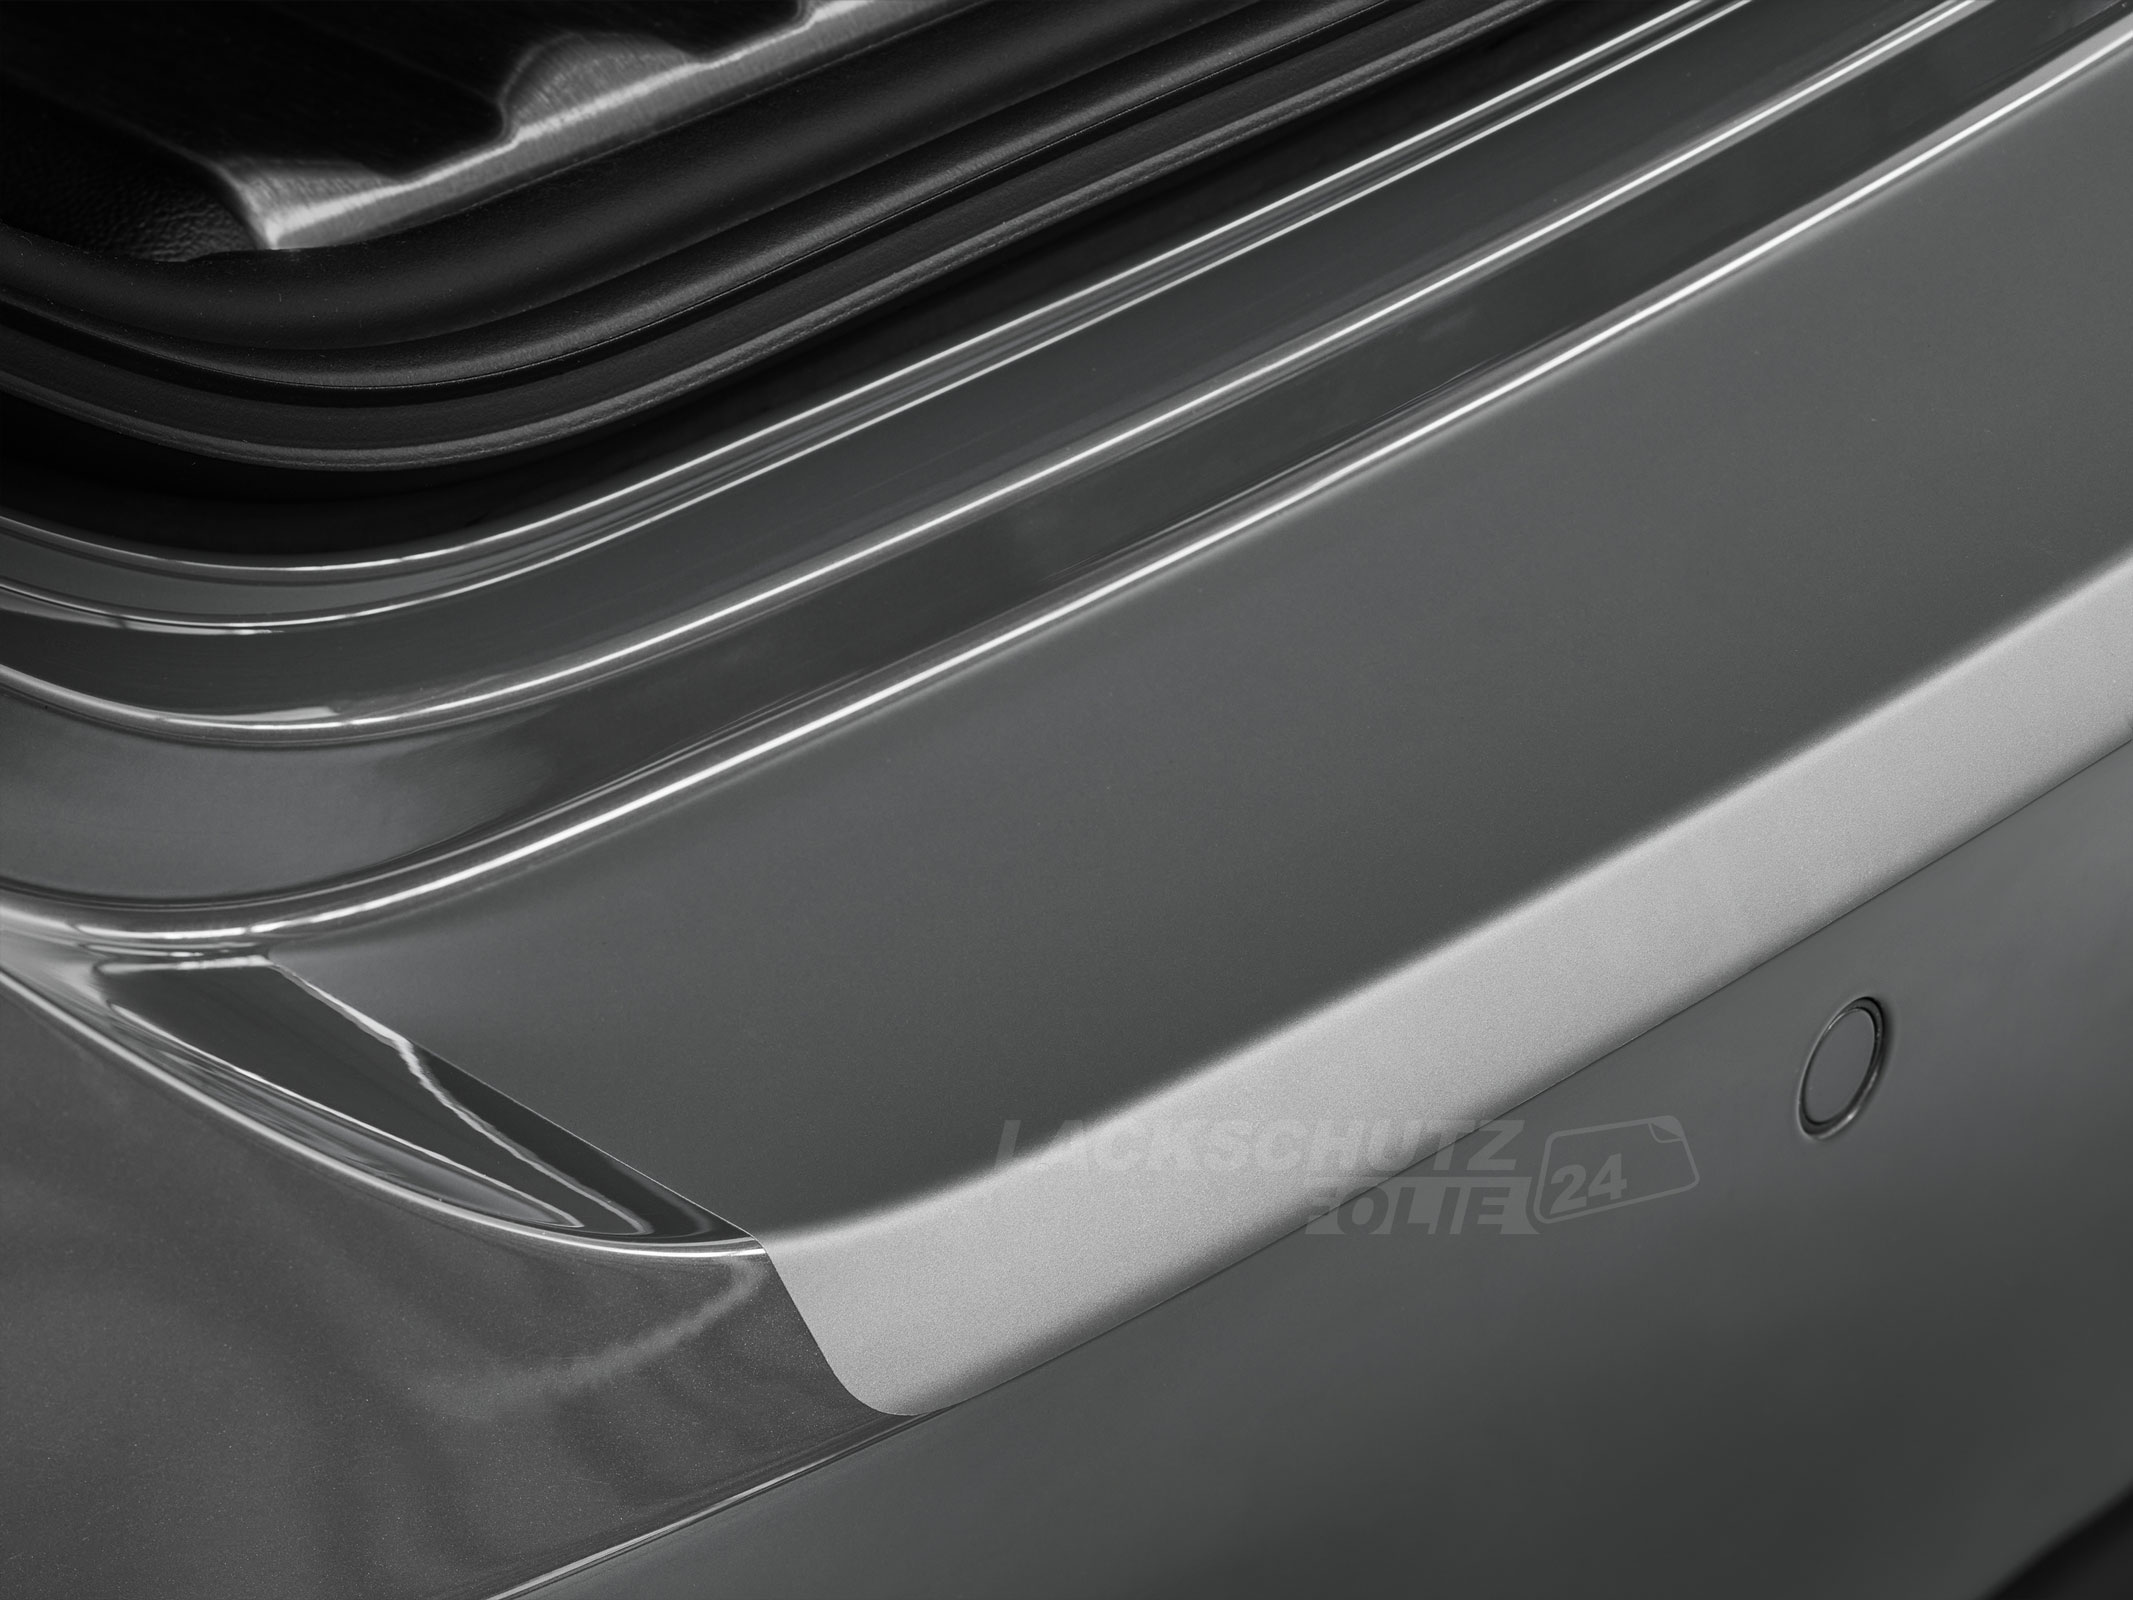 Ladekantenschutzfolie - Transparent Glatt MATT 110 µm stark  für Renault Clio (V) ab BJ 09/2019